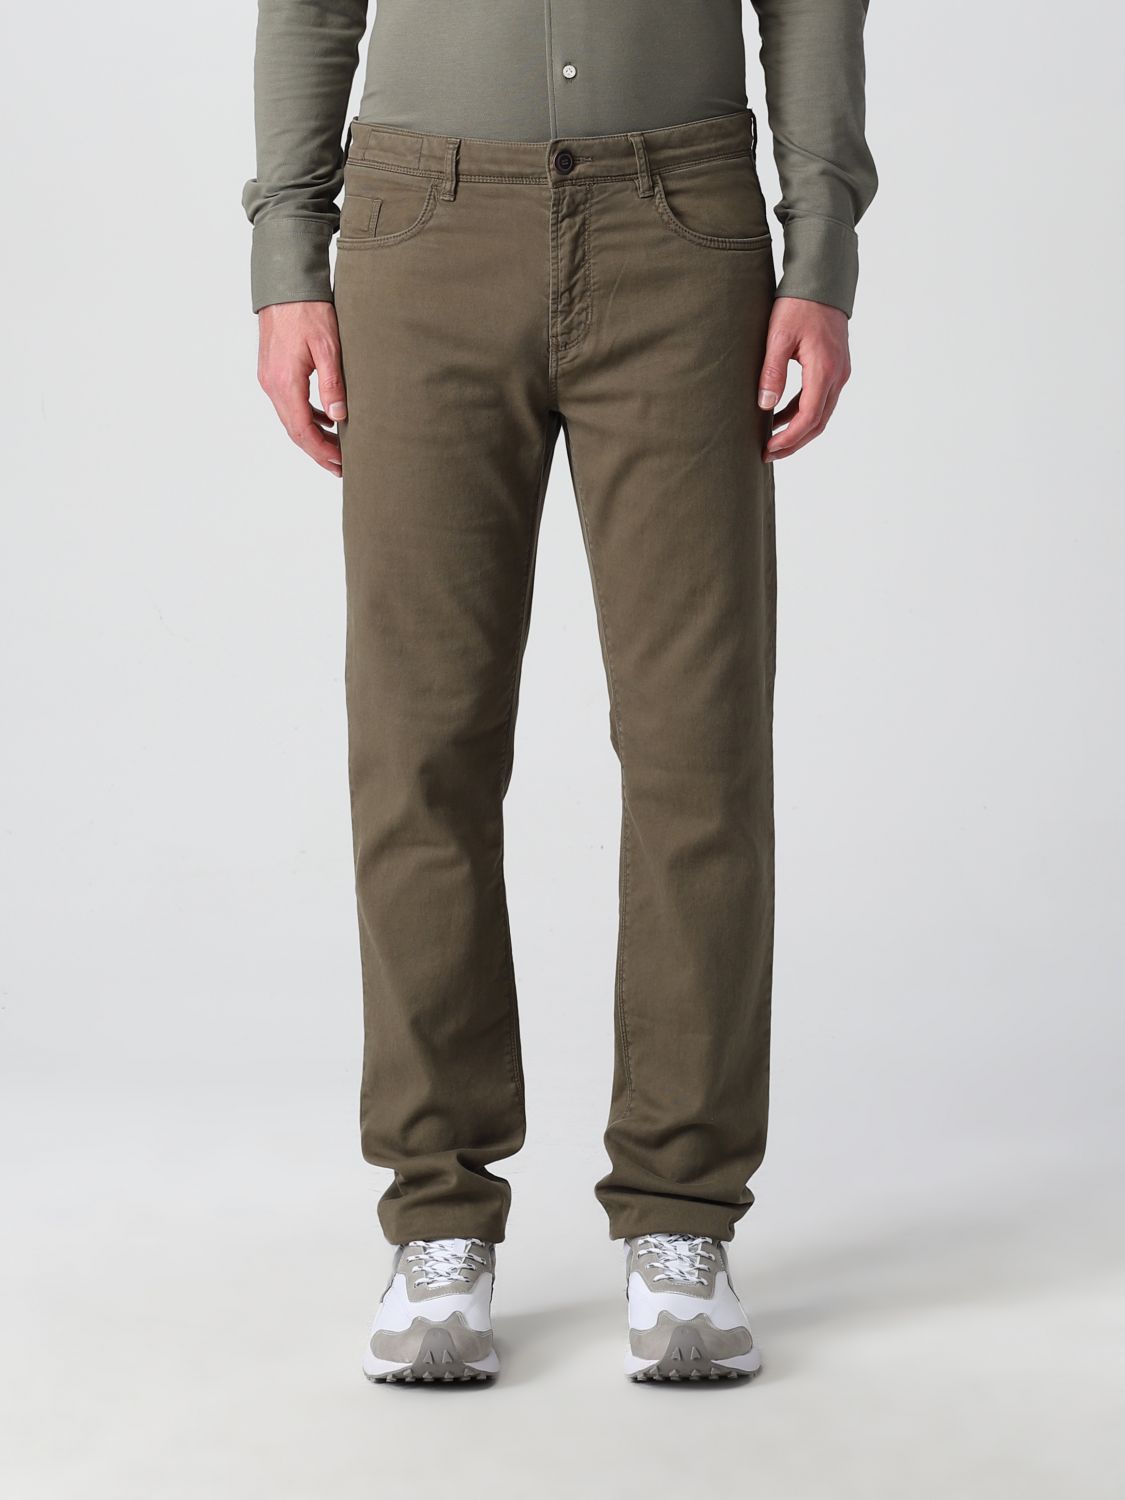 Grumpy implicit field BOGGI MILANO: jeans in stretch Tencel cotton - Military | Boggi Milano jeans  BO22P025803 online on GIGLIO.COM